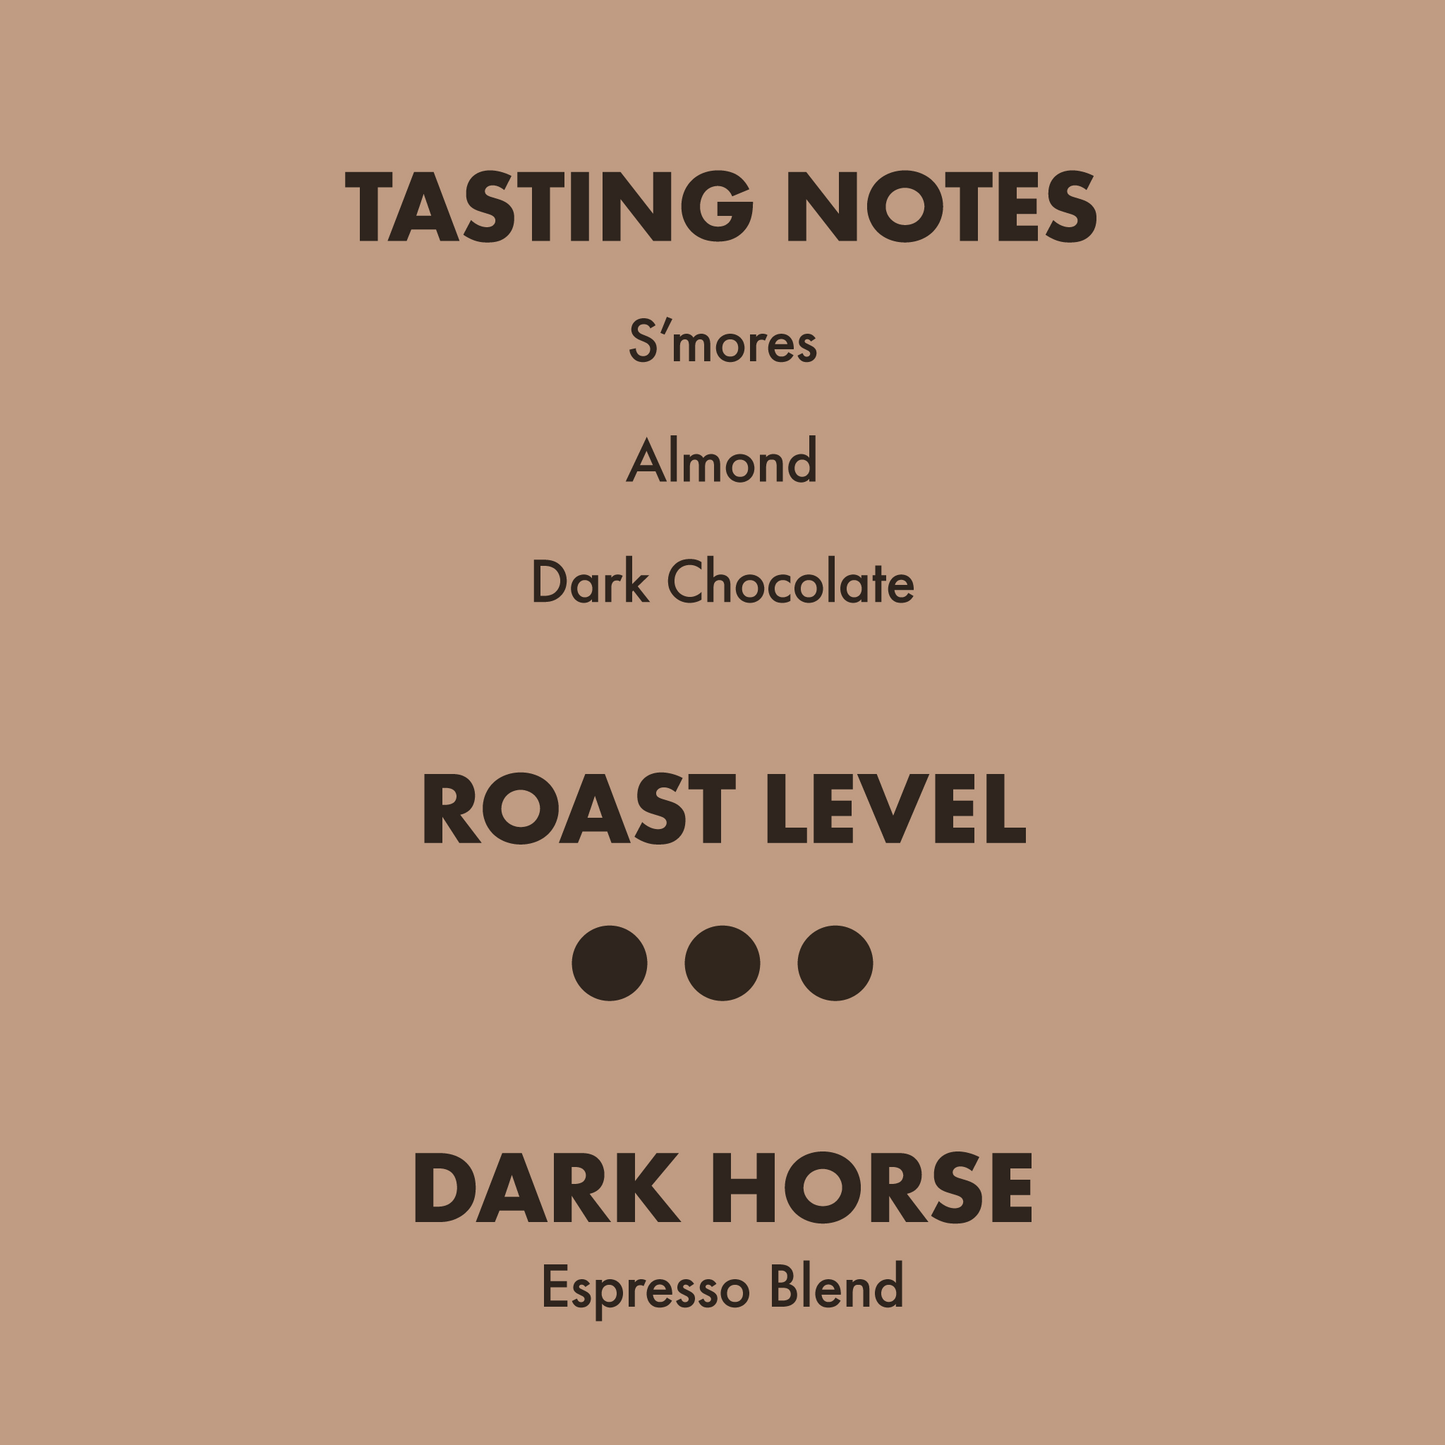 Dark Horse Espresso Blend